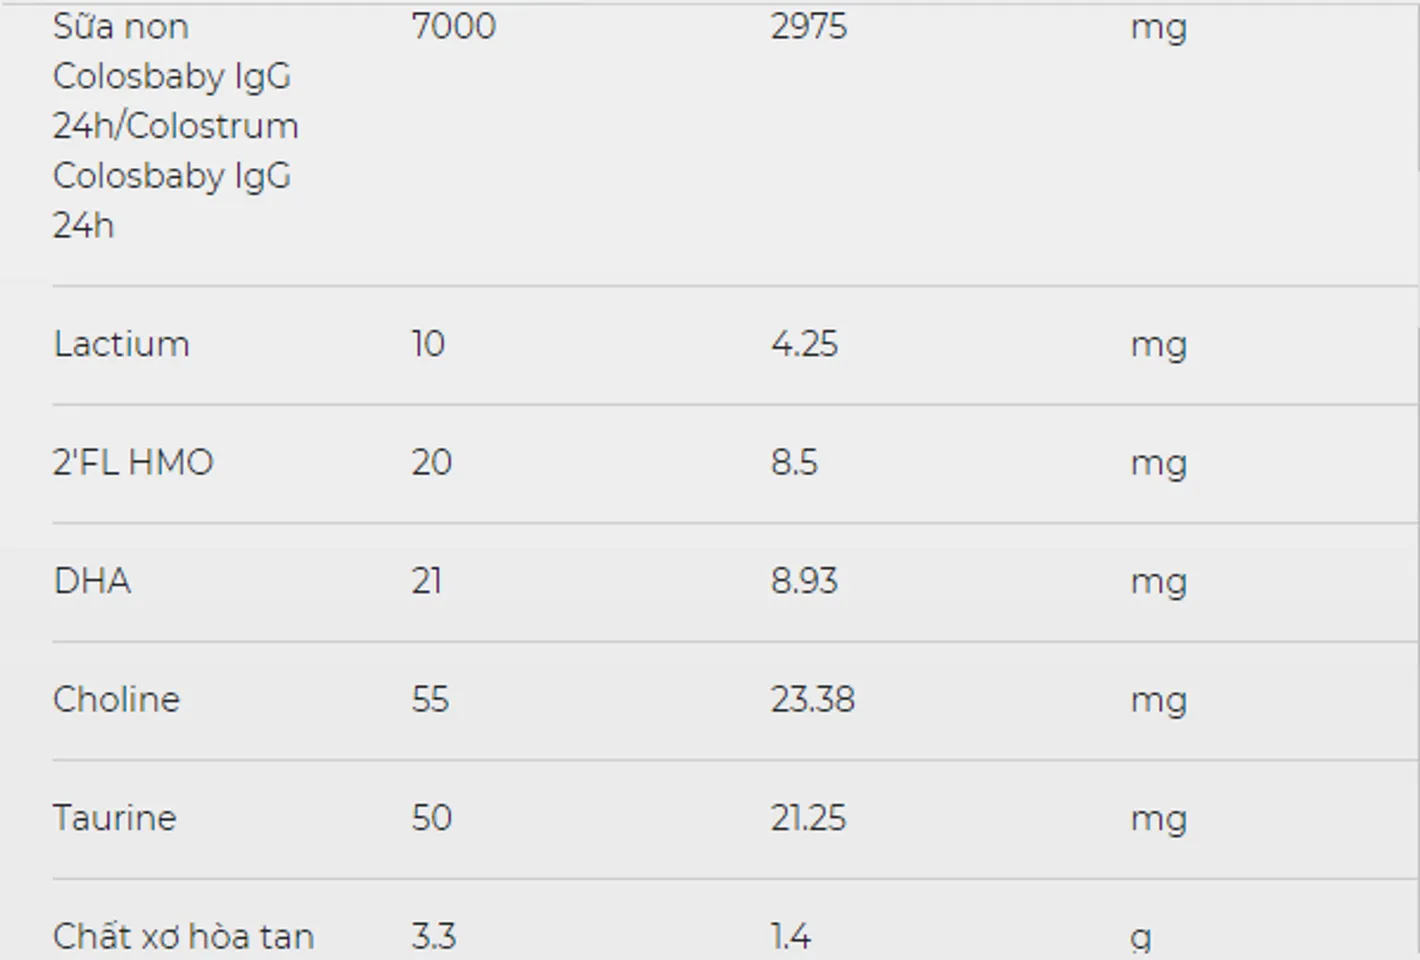 Hàm lượng dinh dưỡng trong sữa non Colosbaby IQ Gold 1+  cho bé